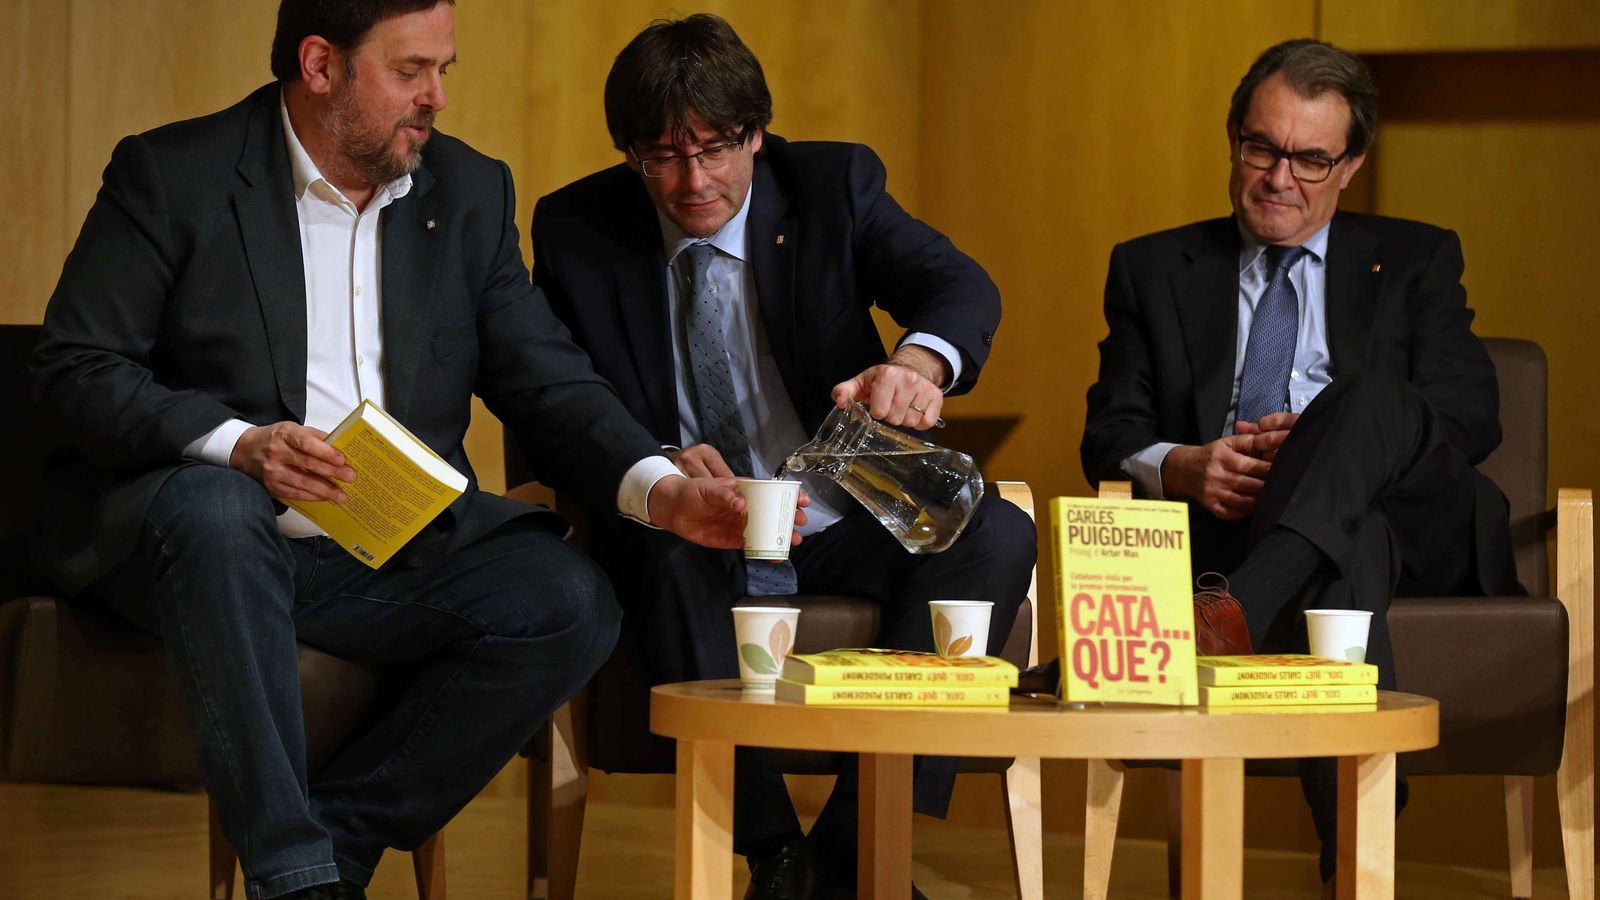 Foto: Oriol Junqueras, Carles Puigdemont y Artur Mas en la presentación del libro 'Cata...qué?'. (EFE)